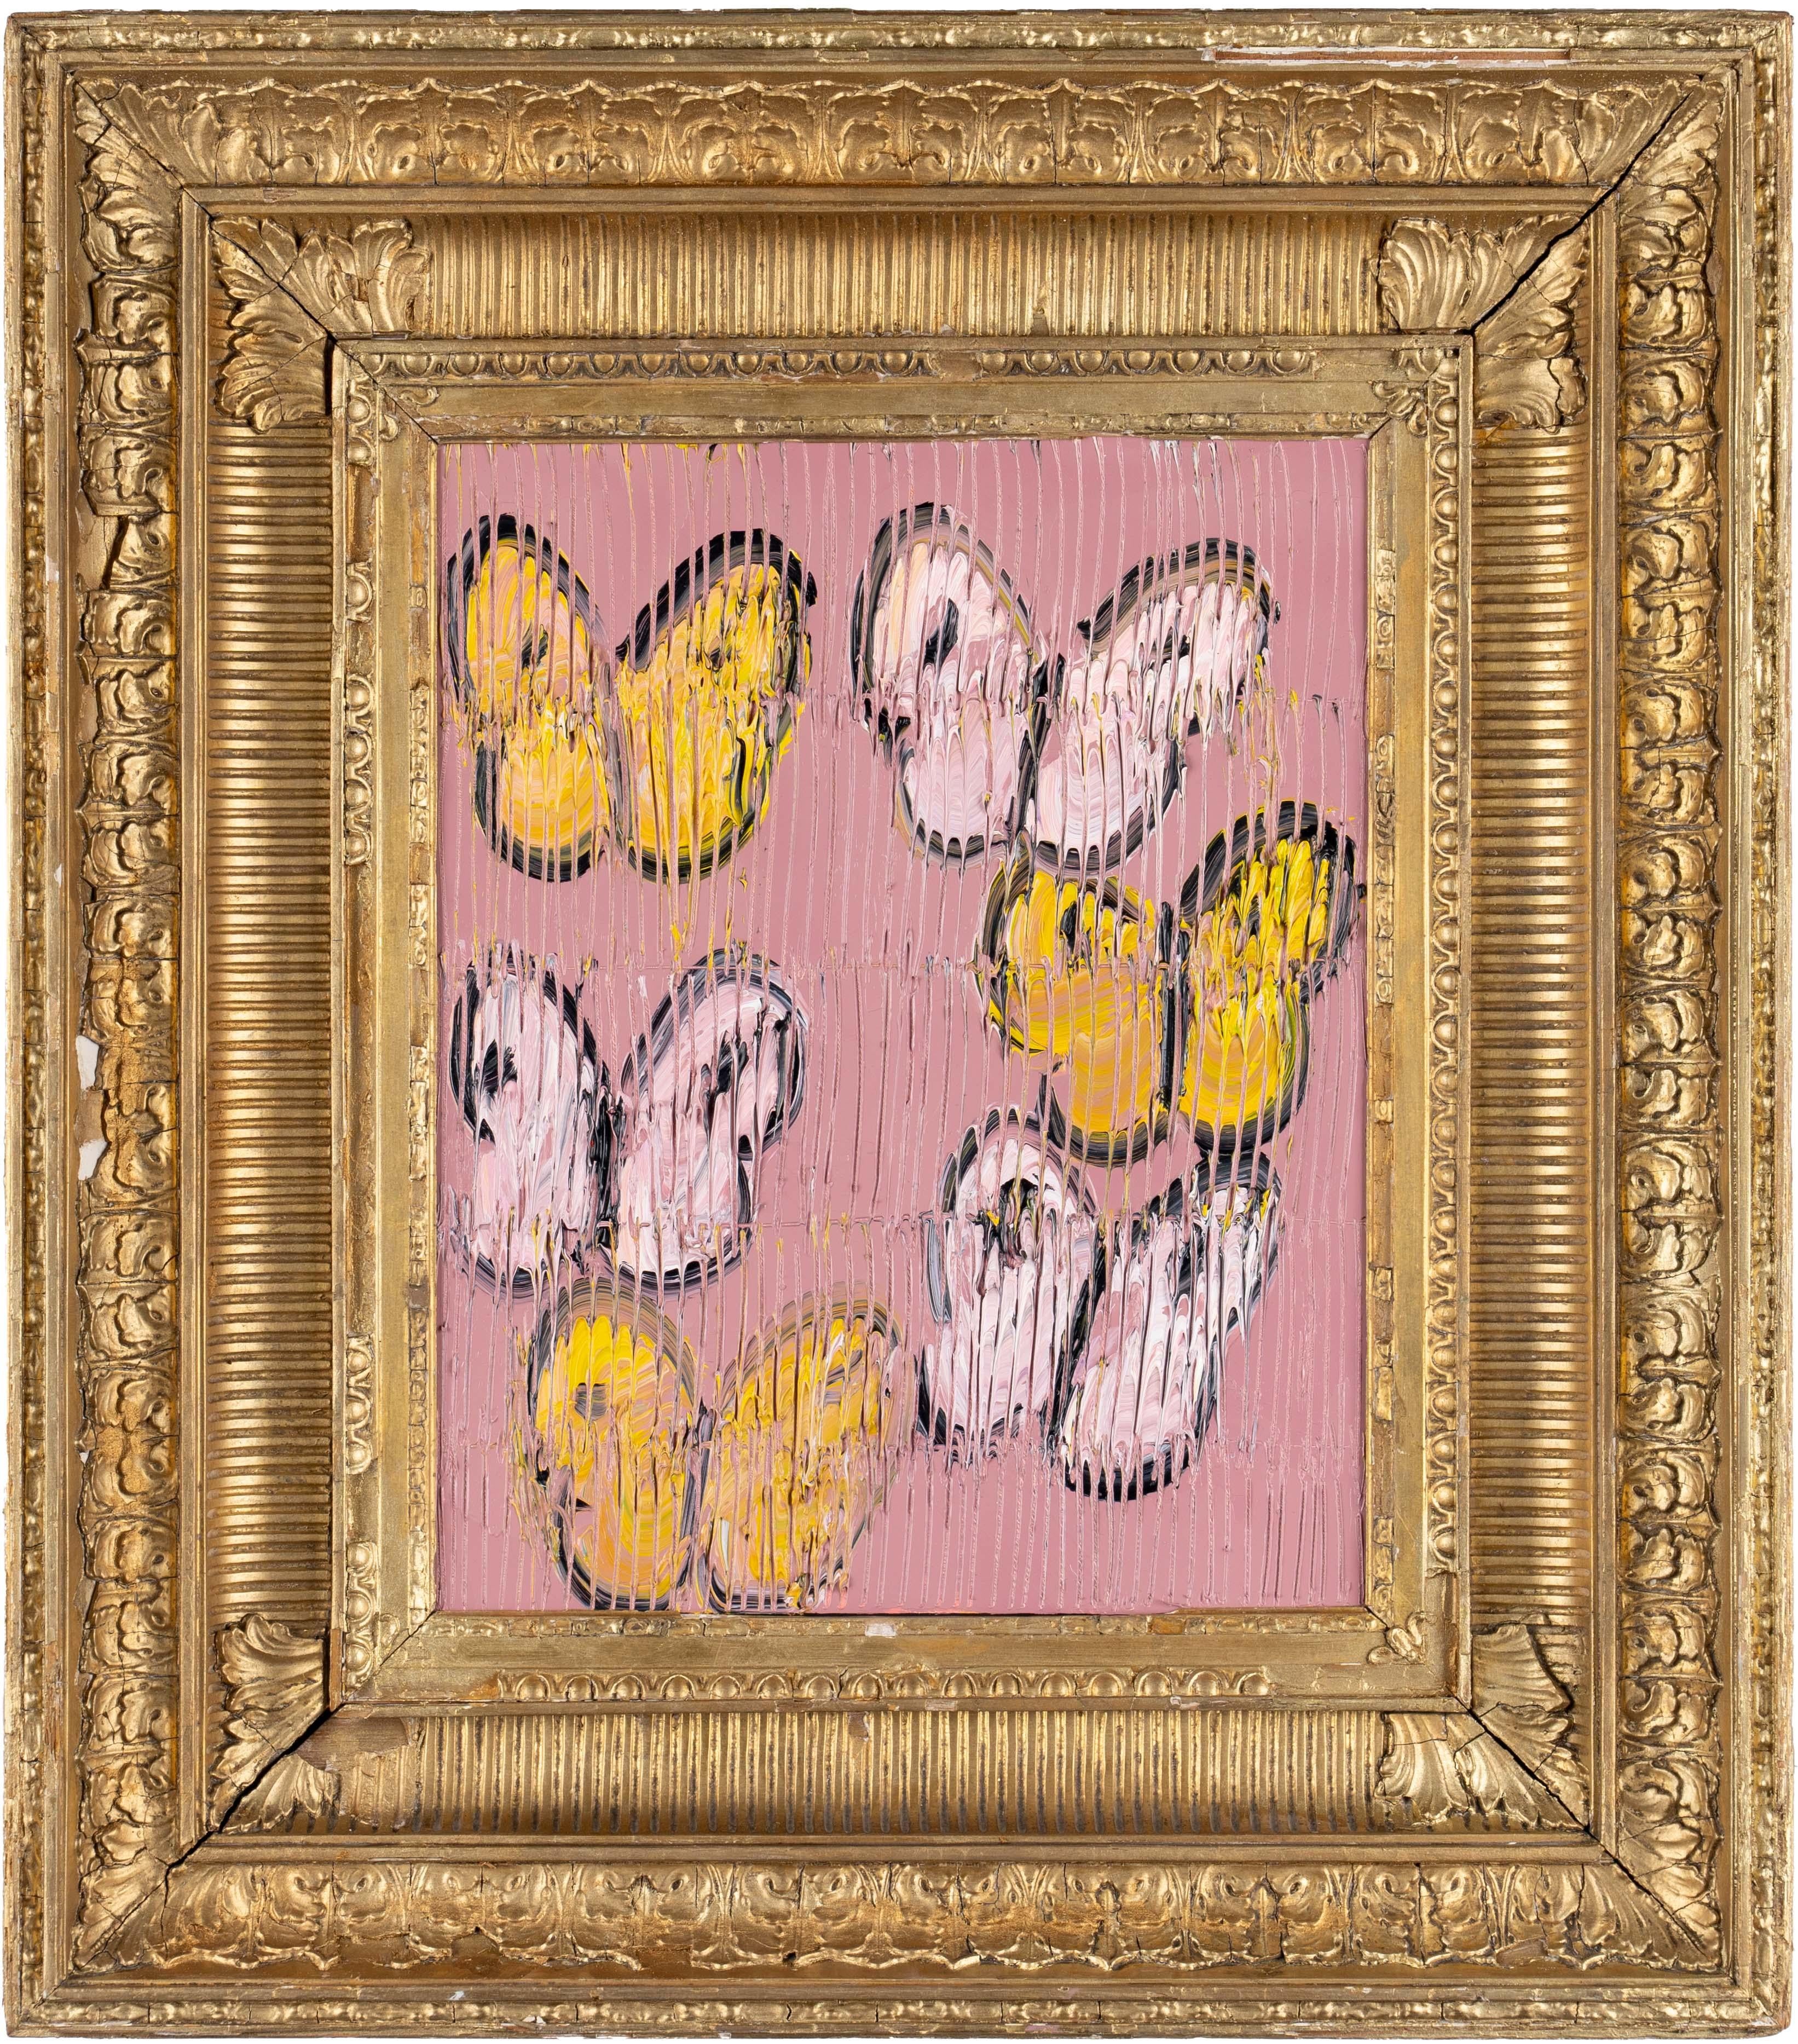 Hunt Slonem "Flight" Rosa & Gelbe Schmetterlinge
Schwarz umrandete hellrosa und gelbe Schmetterlinge auf einem rosa geätzten Hintergrund in einem antiken Goldrahmen.

Ungerahmt: 15 x 12 Zoll
Gerahmt: 26 x 23 Zoll
*Gemälde ist gerahmt - Bitte